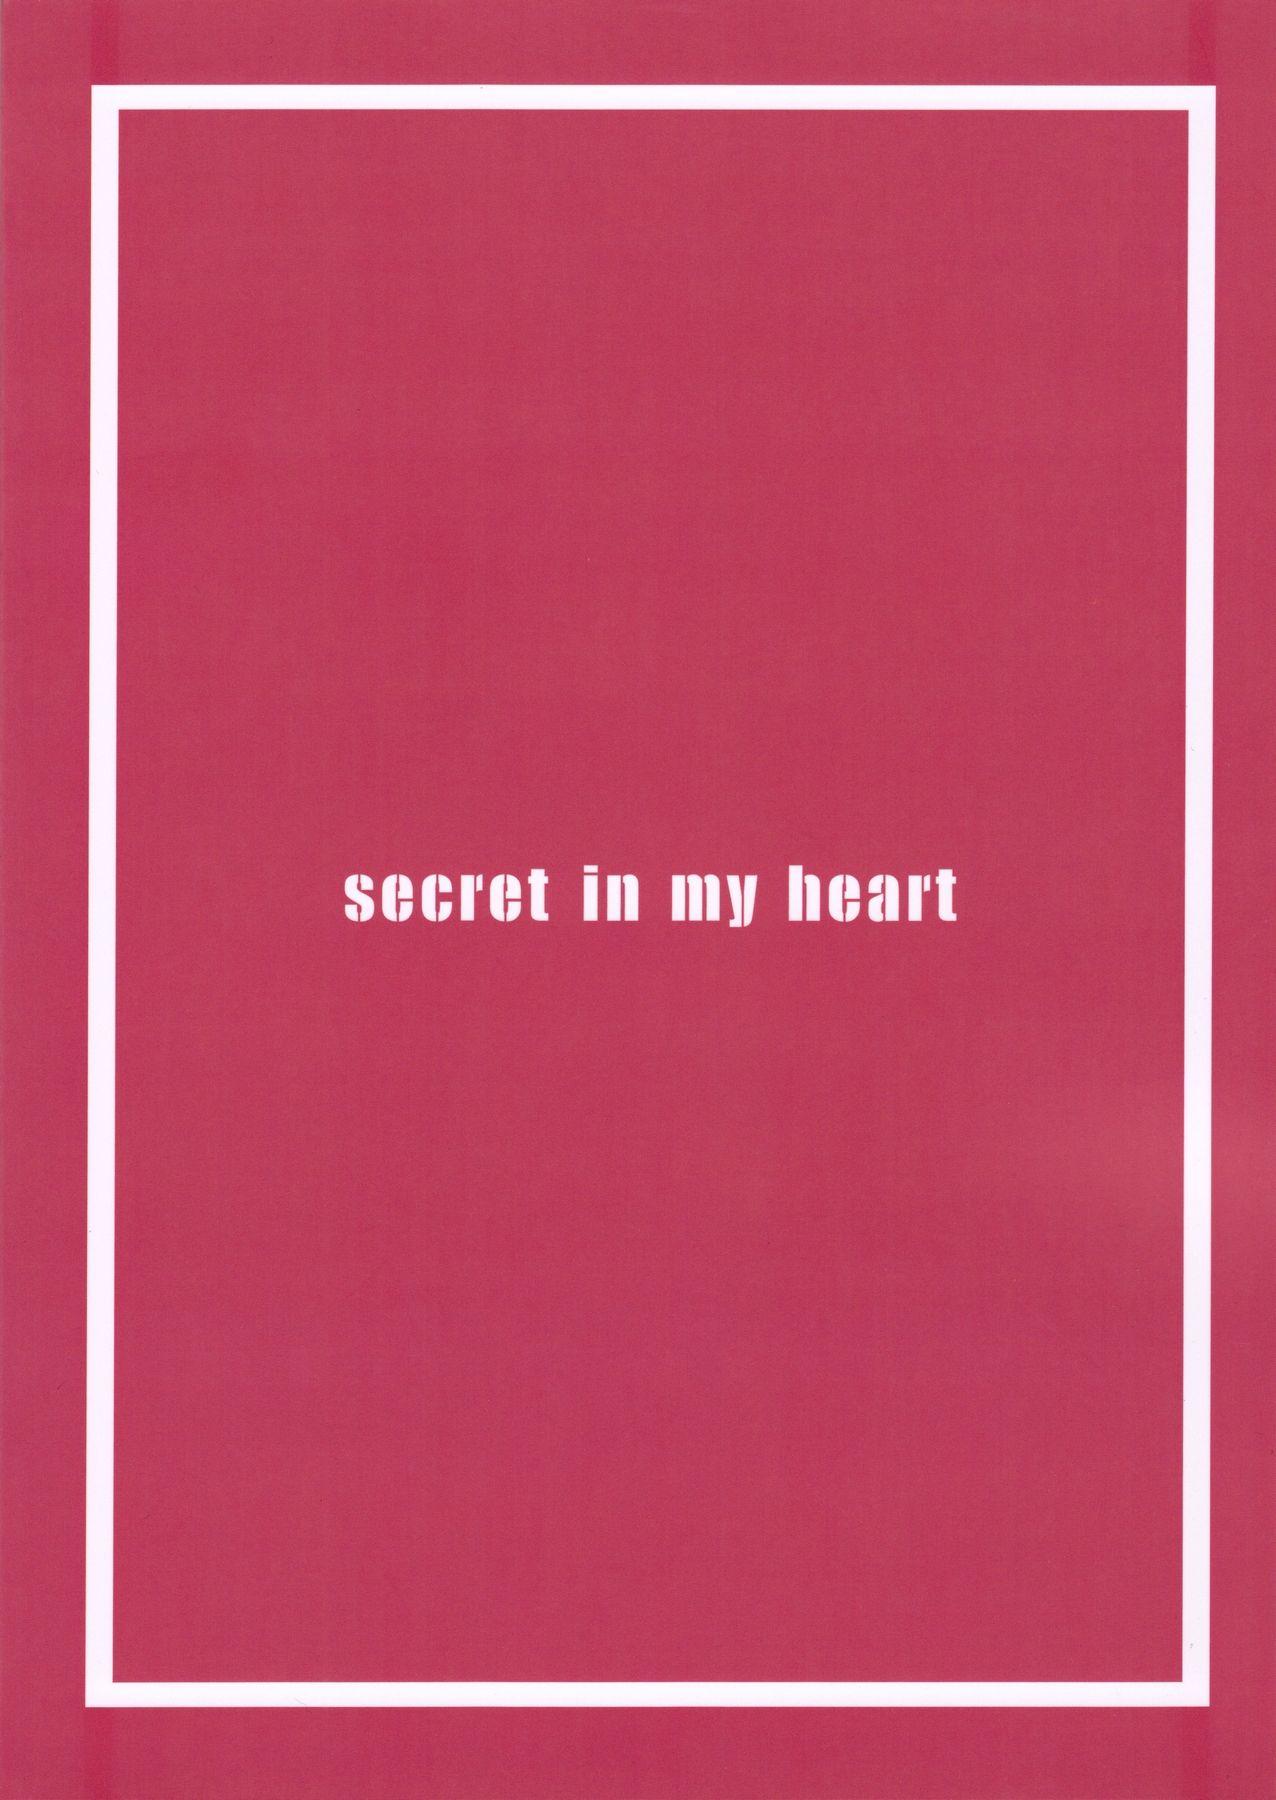 secret in my heart 22